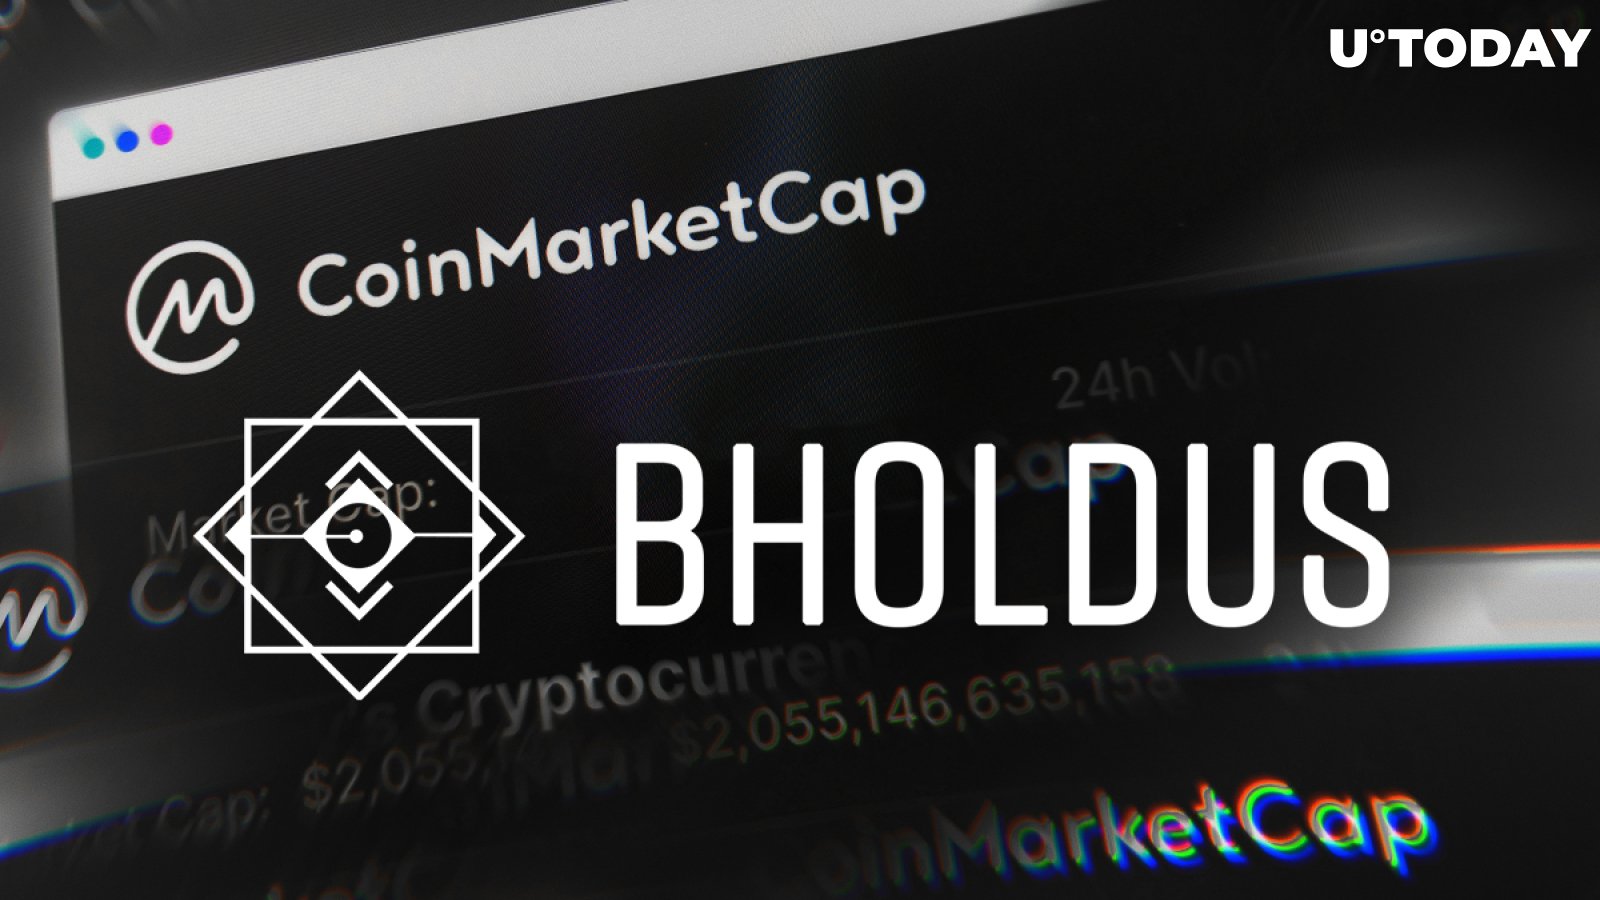 Bholdus (BHO) Becomes Top-Trending Token on CoinMarketCap